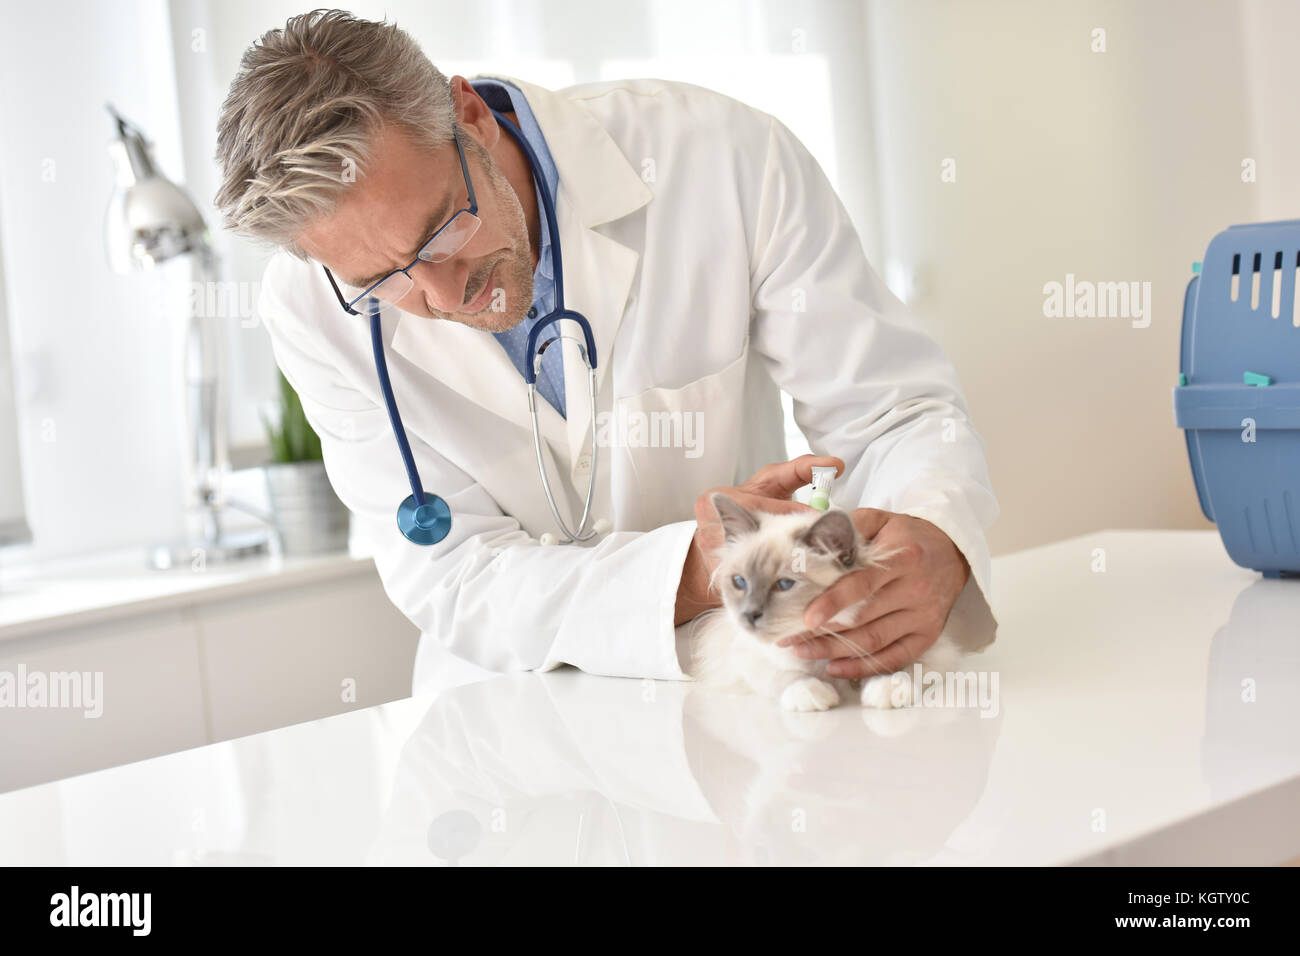 Veterinary examining cat in clinic Stock Photo